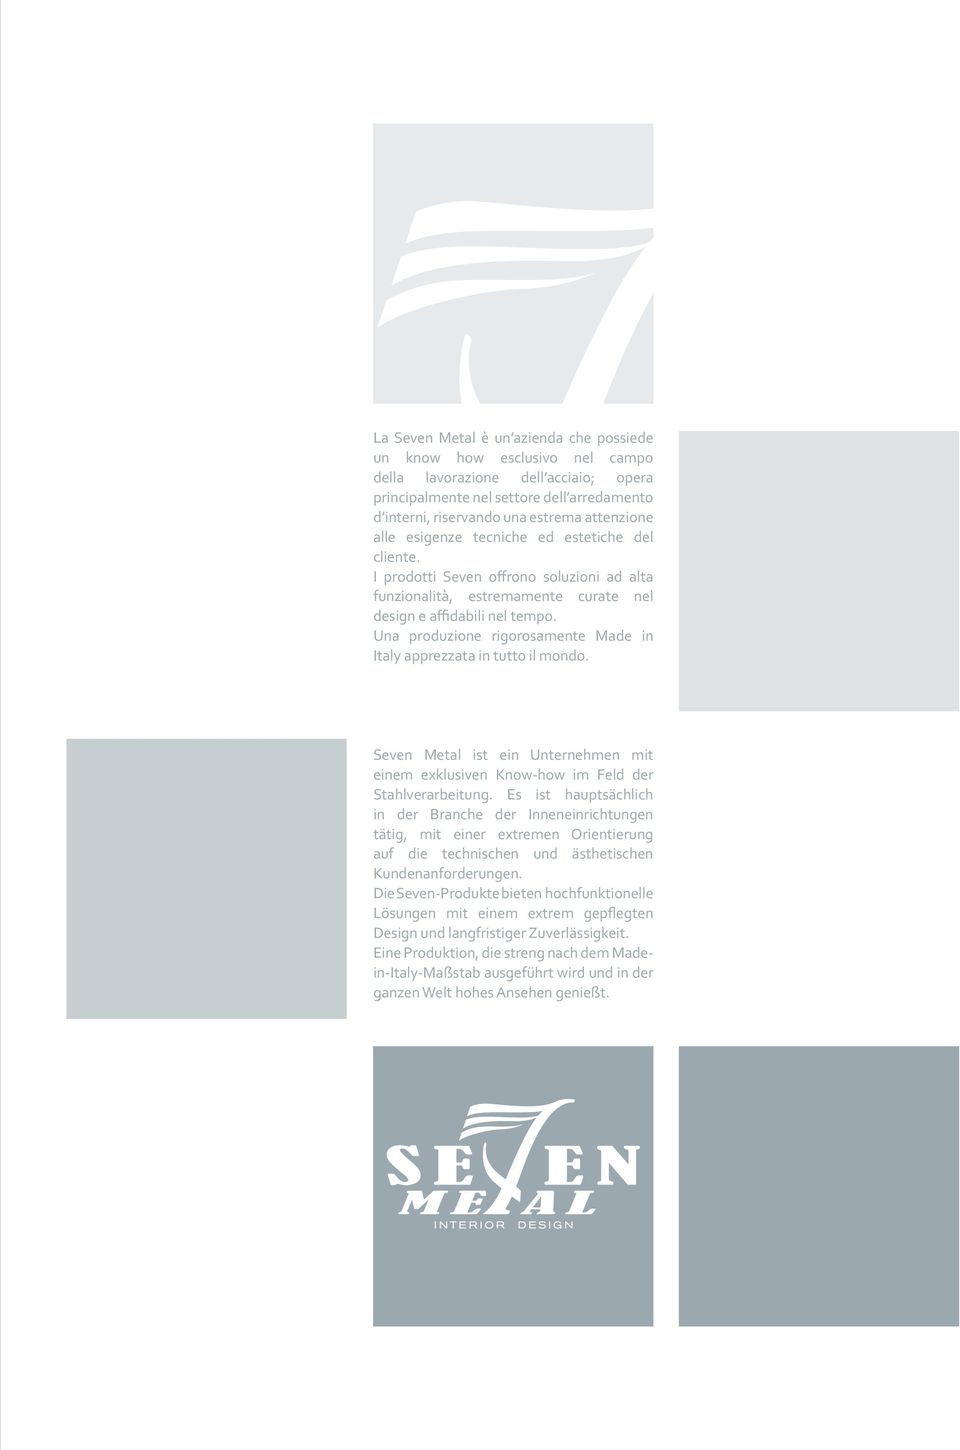 Una produzione rigorosamente Made in Italy apprezzata in tutto il mondo. Seven Metal ist ein Unternehmen mit einem exklusiven Know-how im Feld der Stahlverarbeitung.